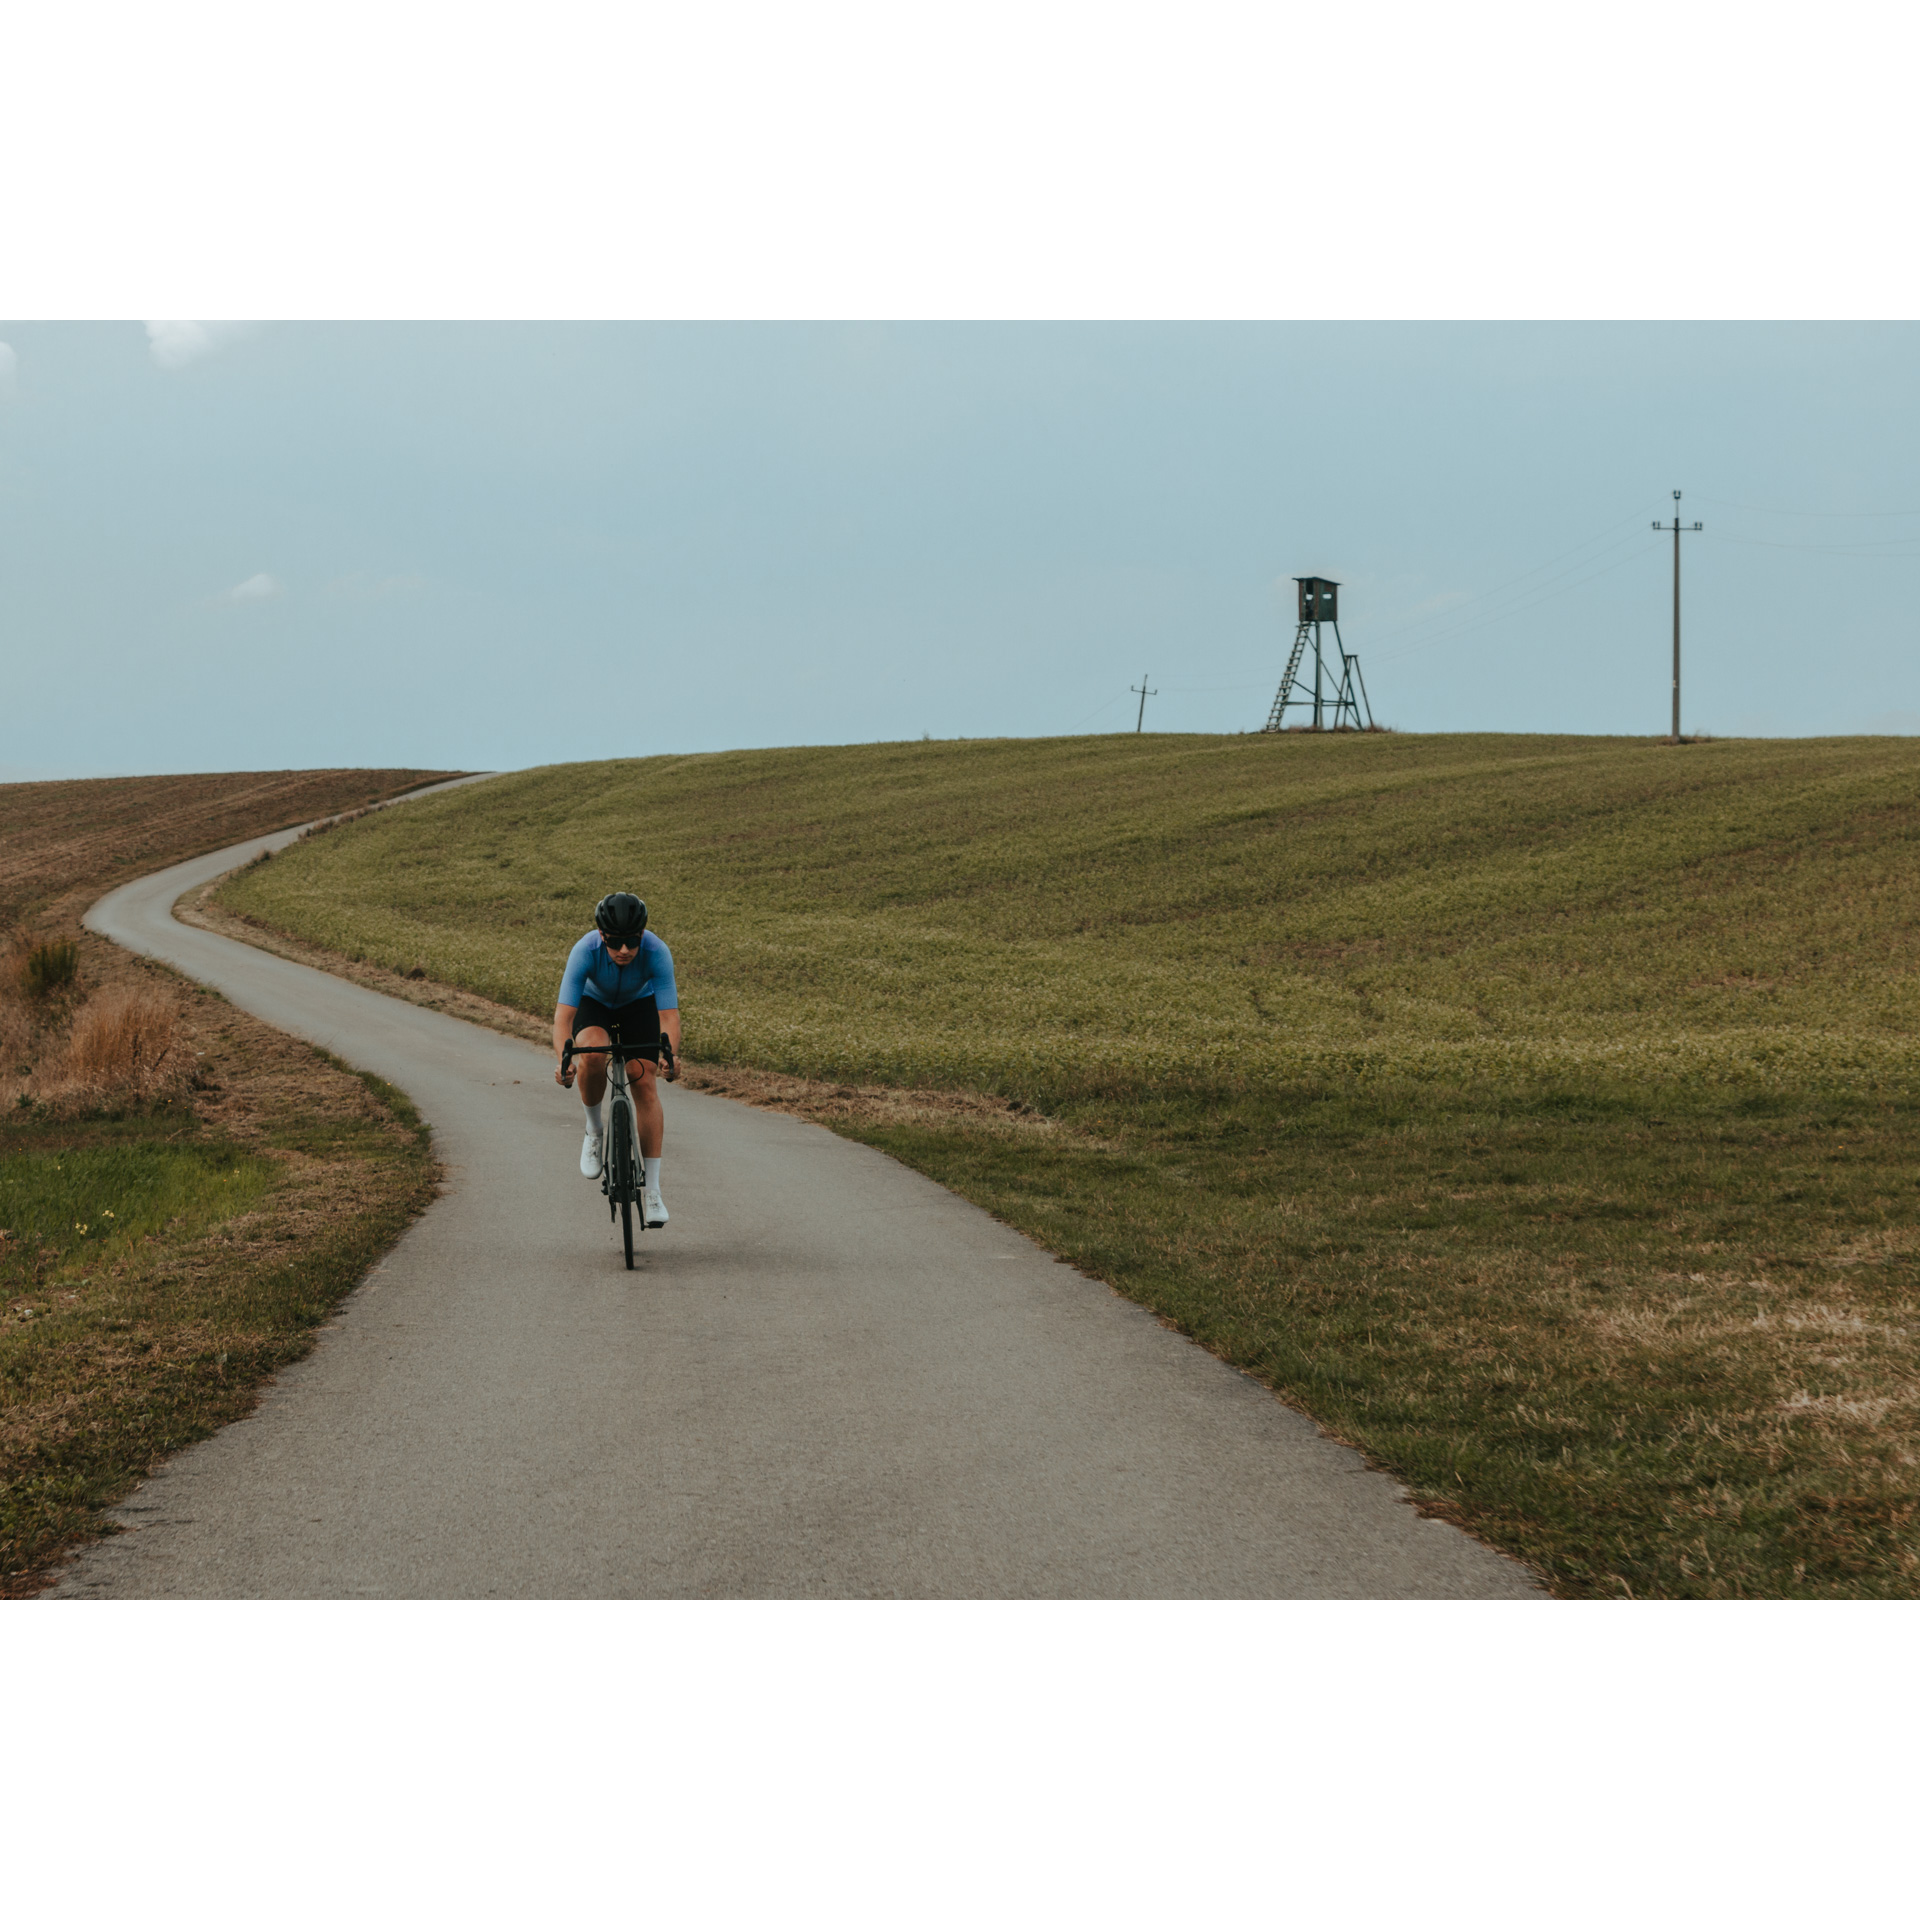 Rowerzysta w niebiesko-czarnym stroju kolarskim, kasku i okularach jadący rowerem asfaltową drogą wśród zielonych pagórków, w oddali na pagórku ambona obserwacyjna